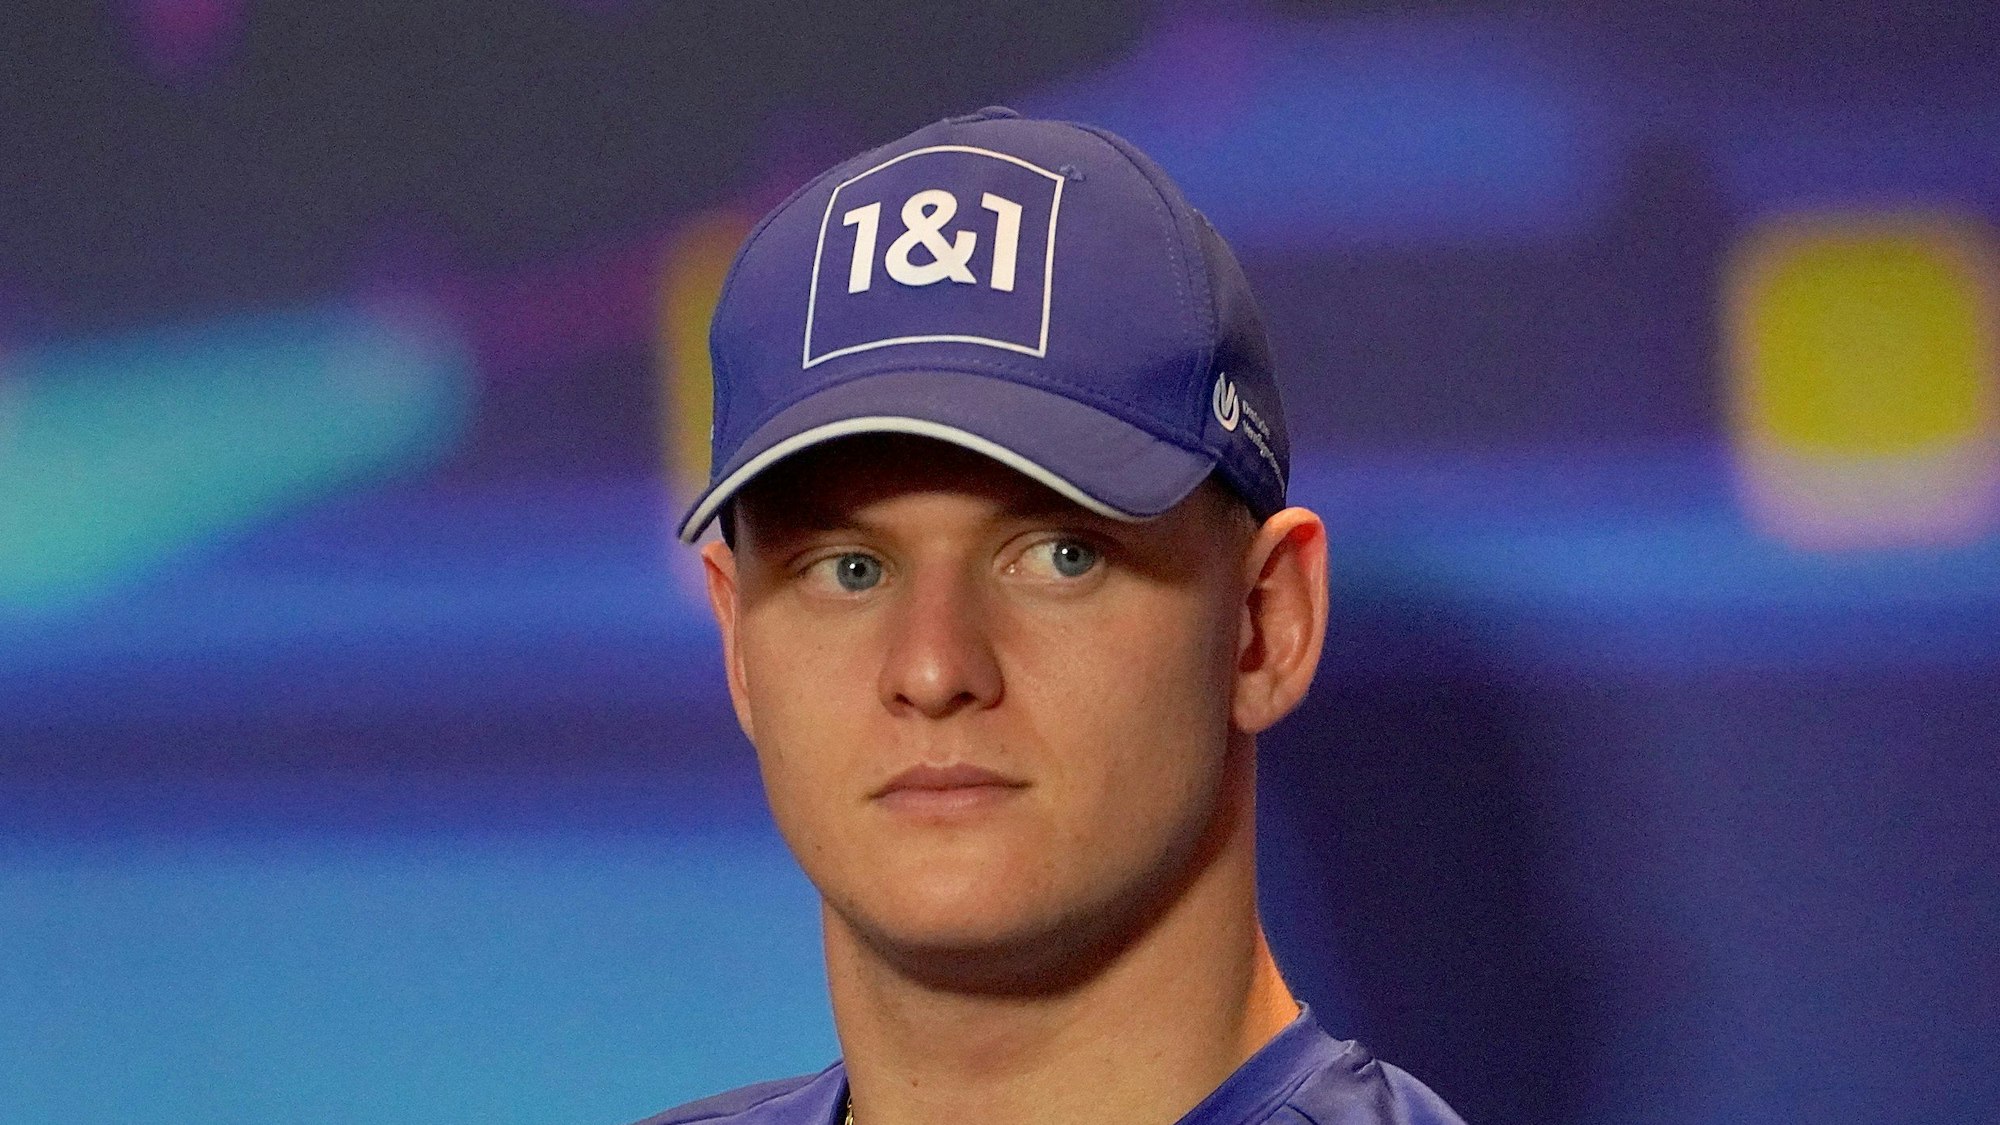 Mick Schumacher blickt auf einer Pressekonferenz in Abu Dhabi vom Podium in Richtung Presse. Er trägt eine blaue Kappe seines Teams Haas.